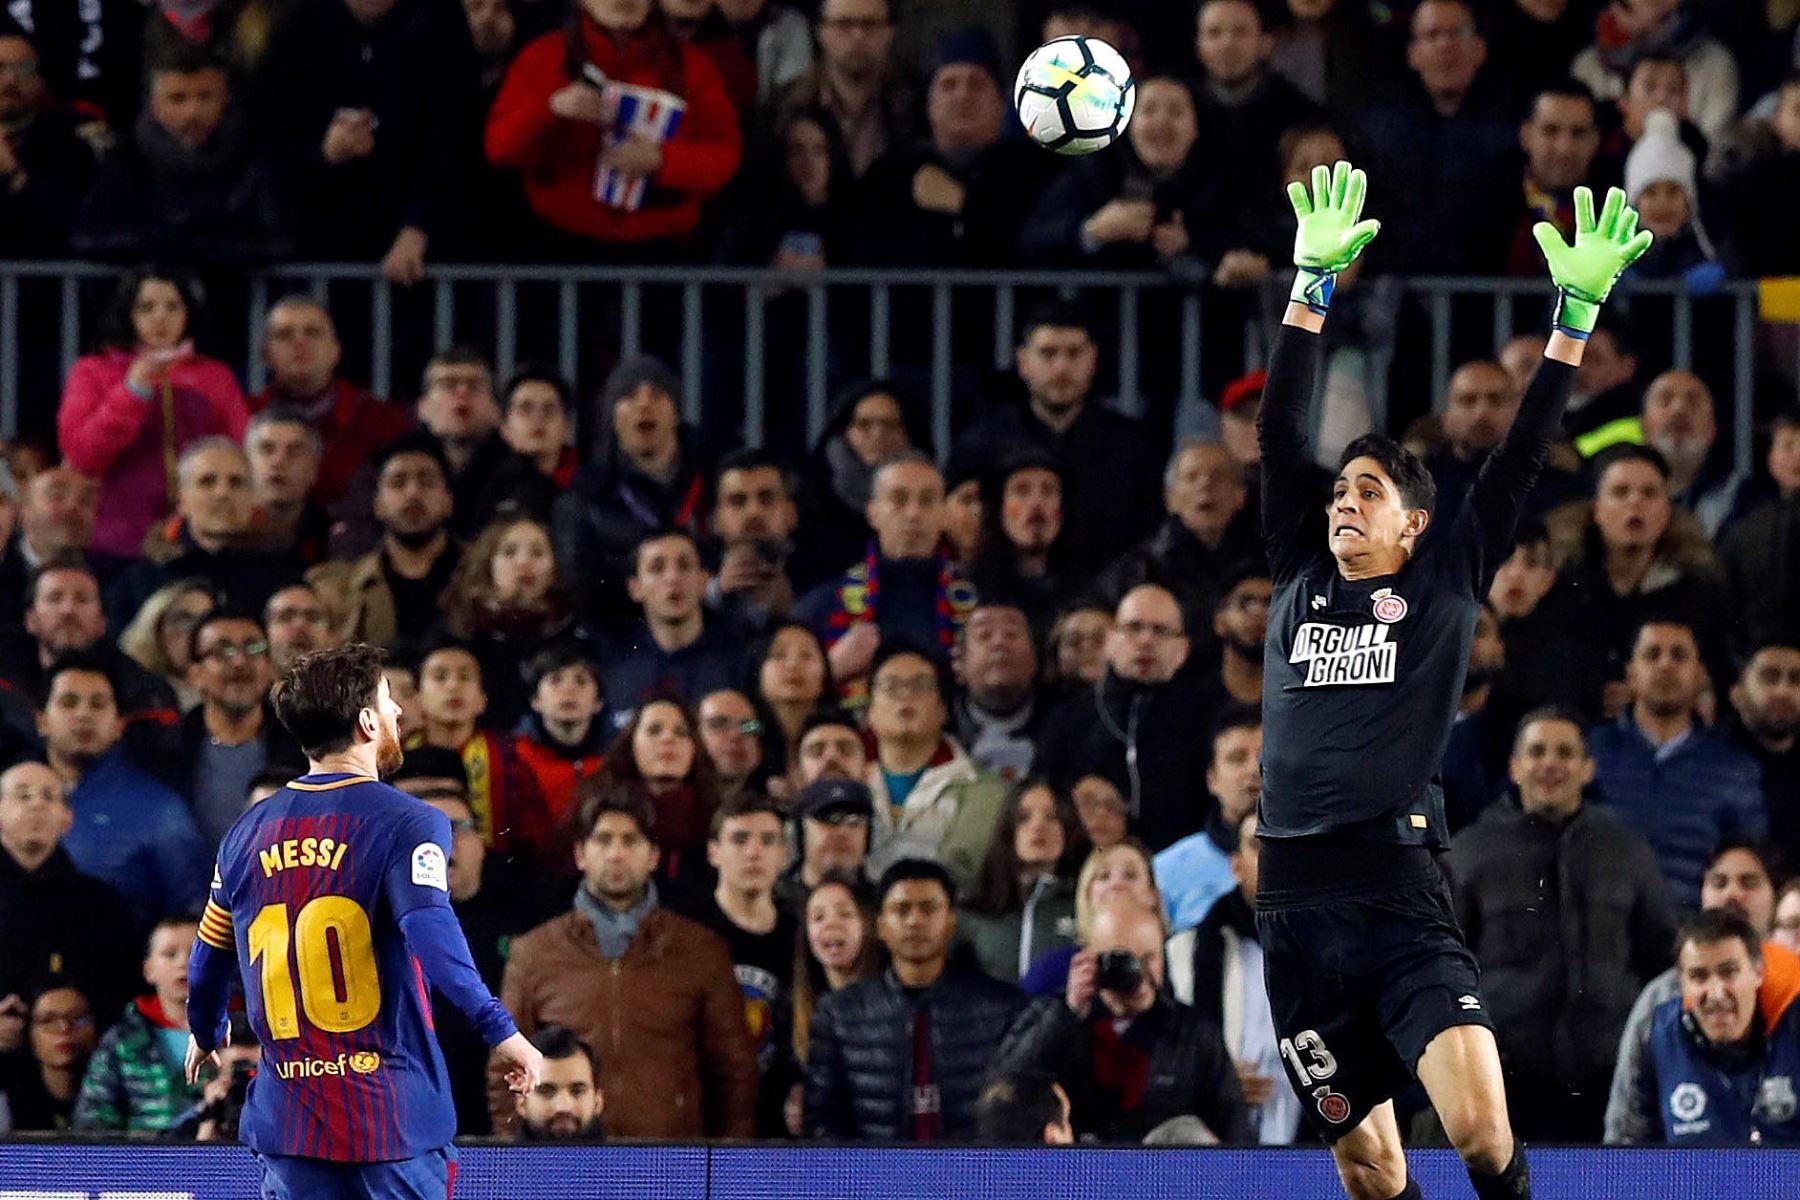 Leo Messi eleva el balón ante Bounou, del Girona, durante el partido de Liga en Primera Divisón que se disputa esta noche en el Camp Nou.Foto:EFE